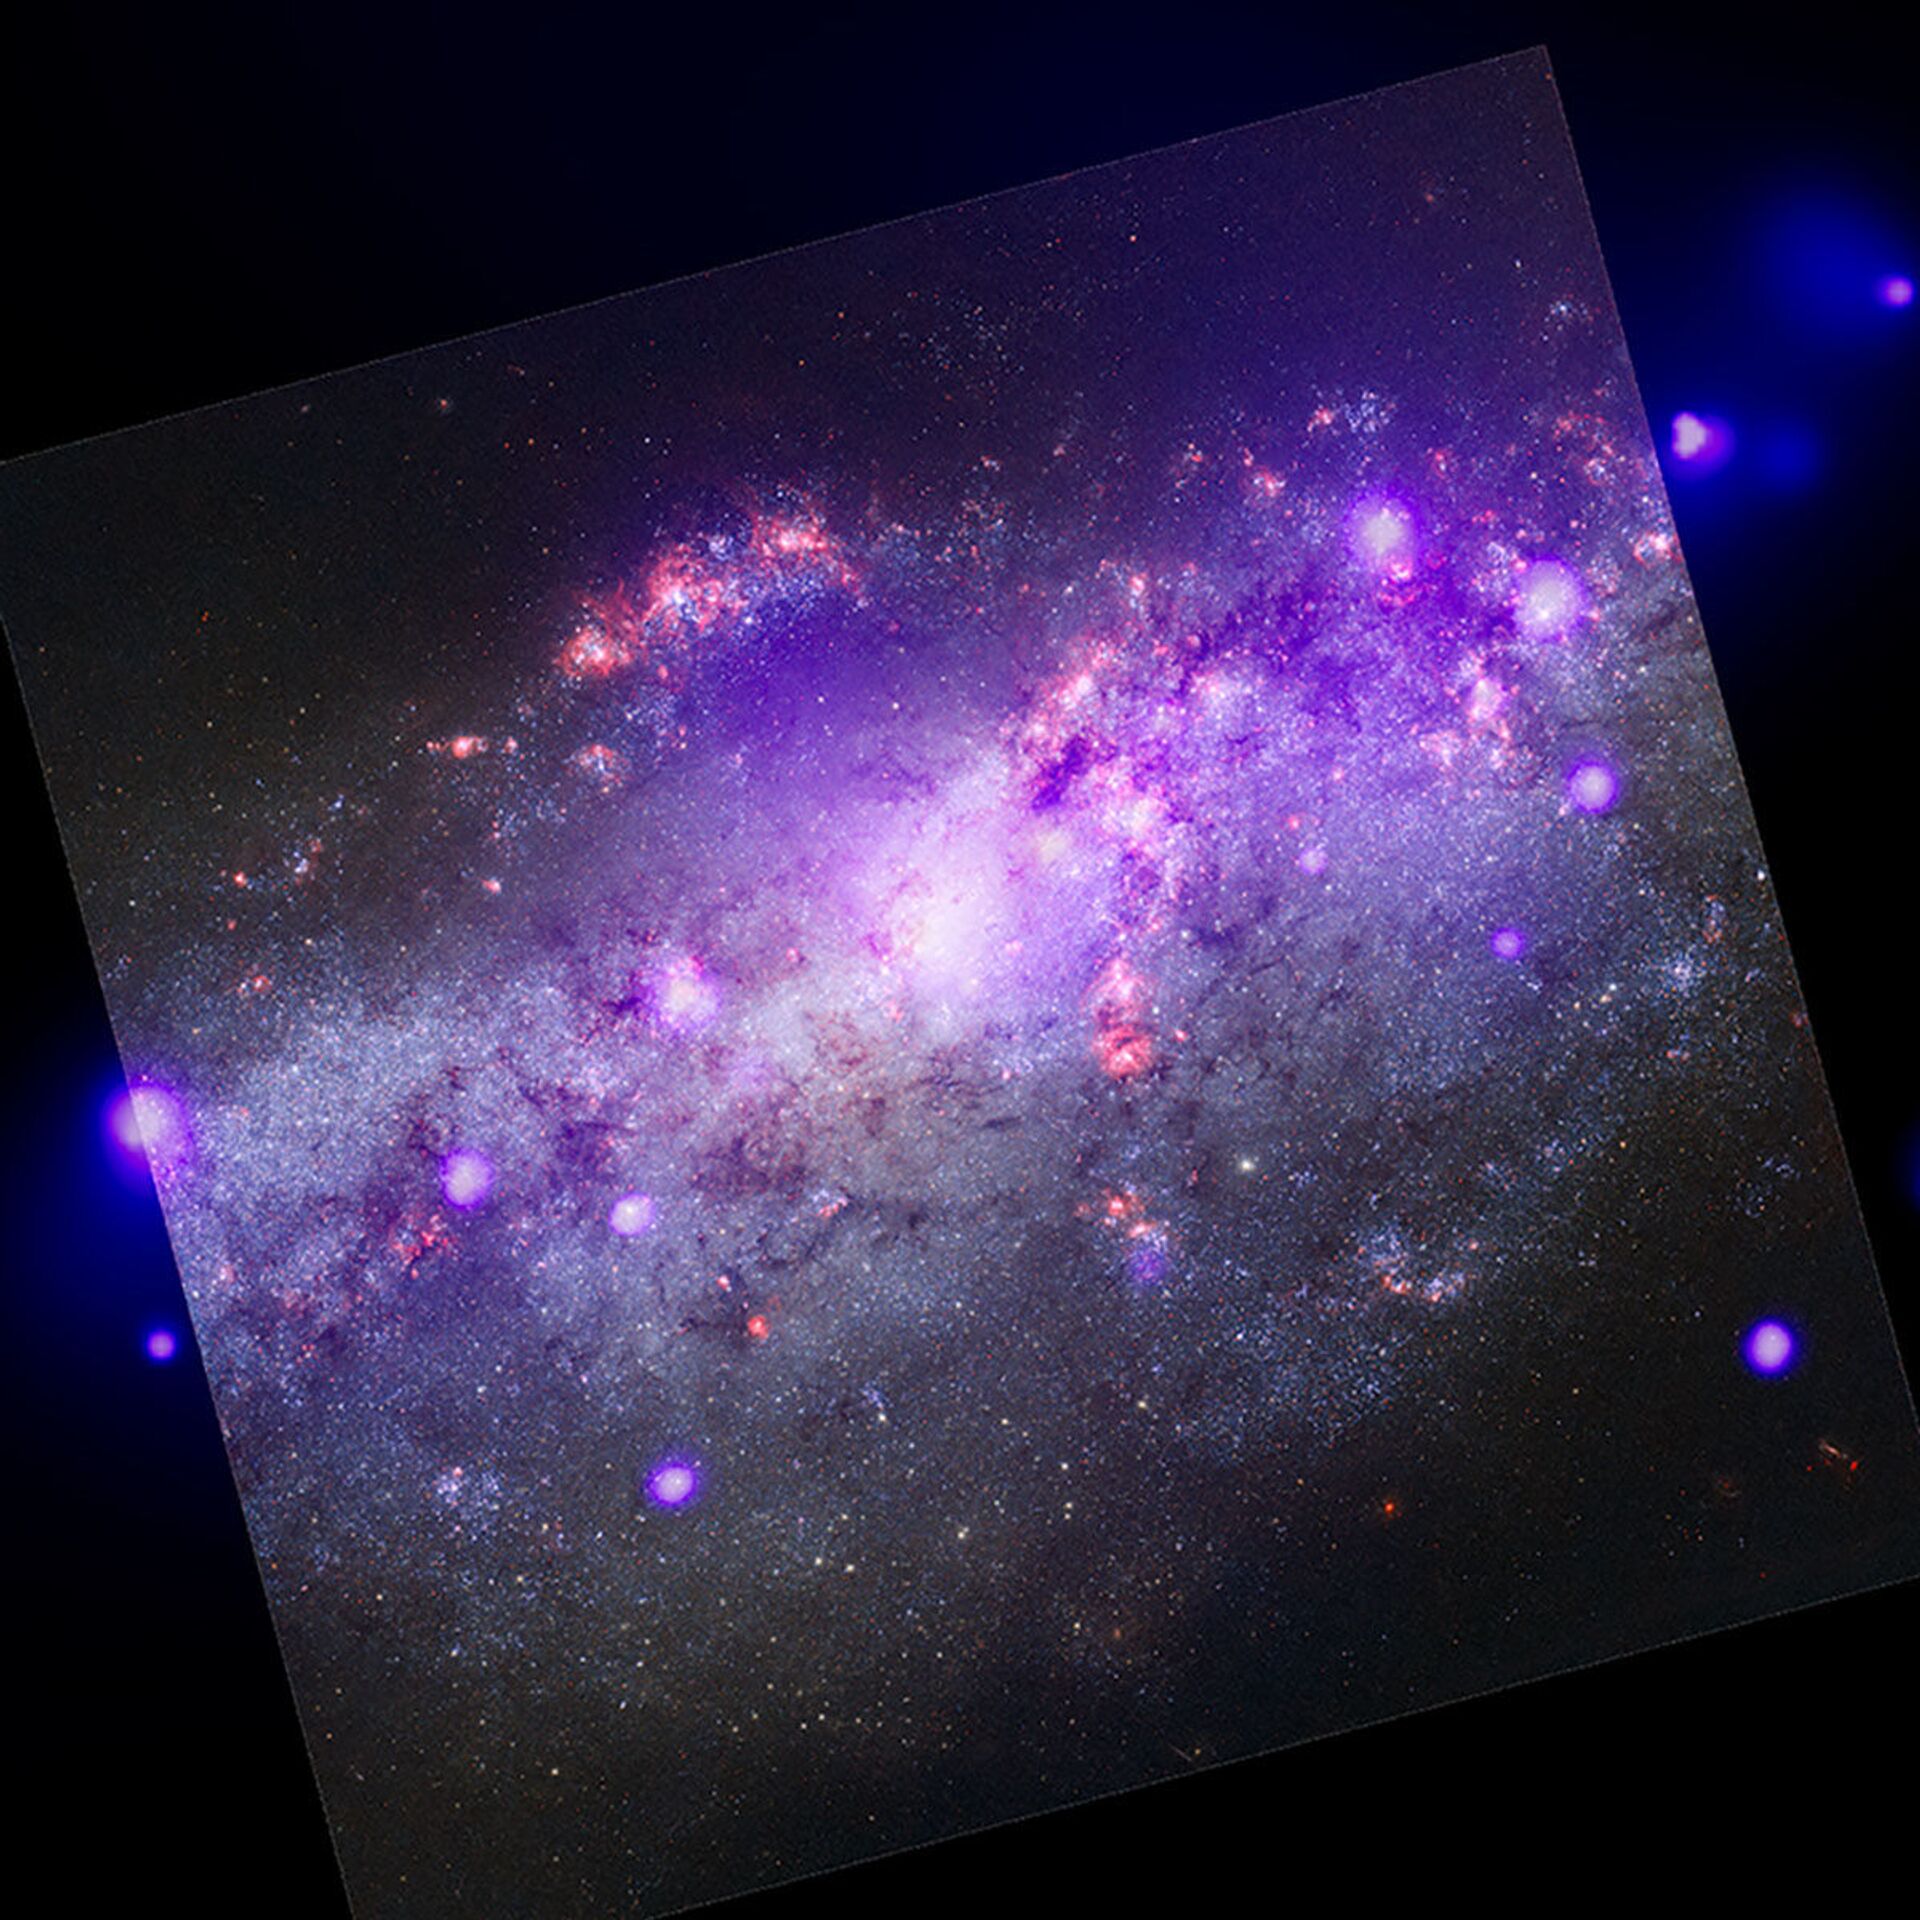 Galáxia espiral NGC 4490  - Sputnik Brasil, 1920, 06.02.2022